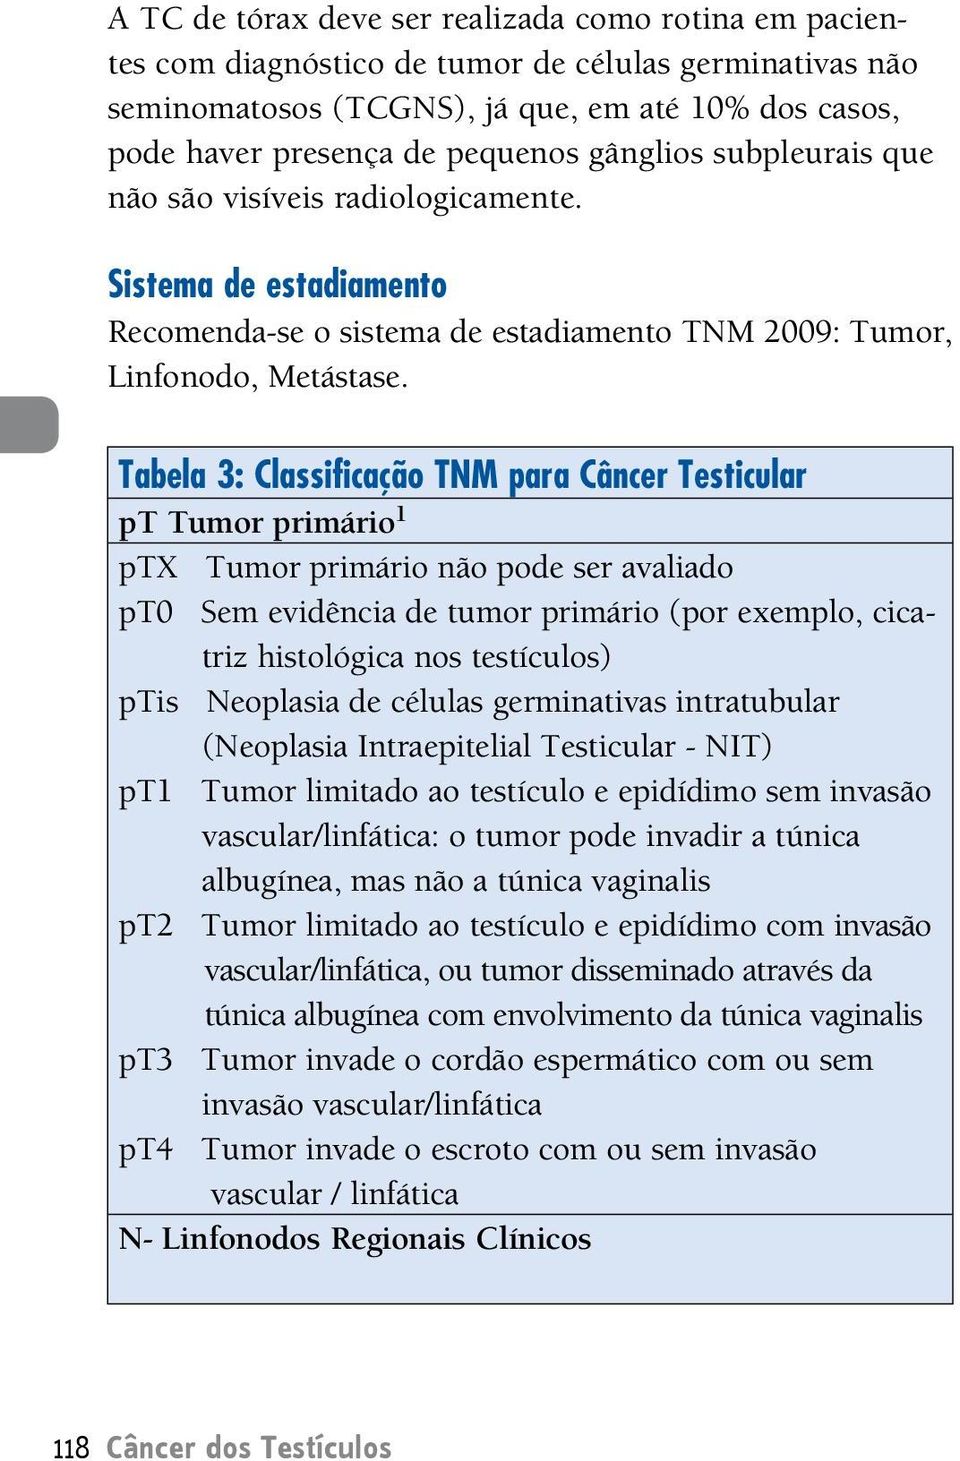 Tabela 3: Classificação TNM para Câncer Testicular pt Tumor primário 1 ptx Tumor primário não pode ser avaliado pt0 Sem evidência de tumor primário (por exemplo, cicatriz histológica nos testículos)